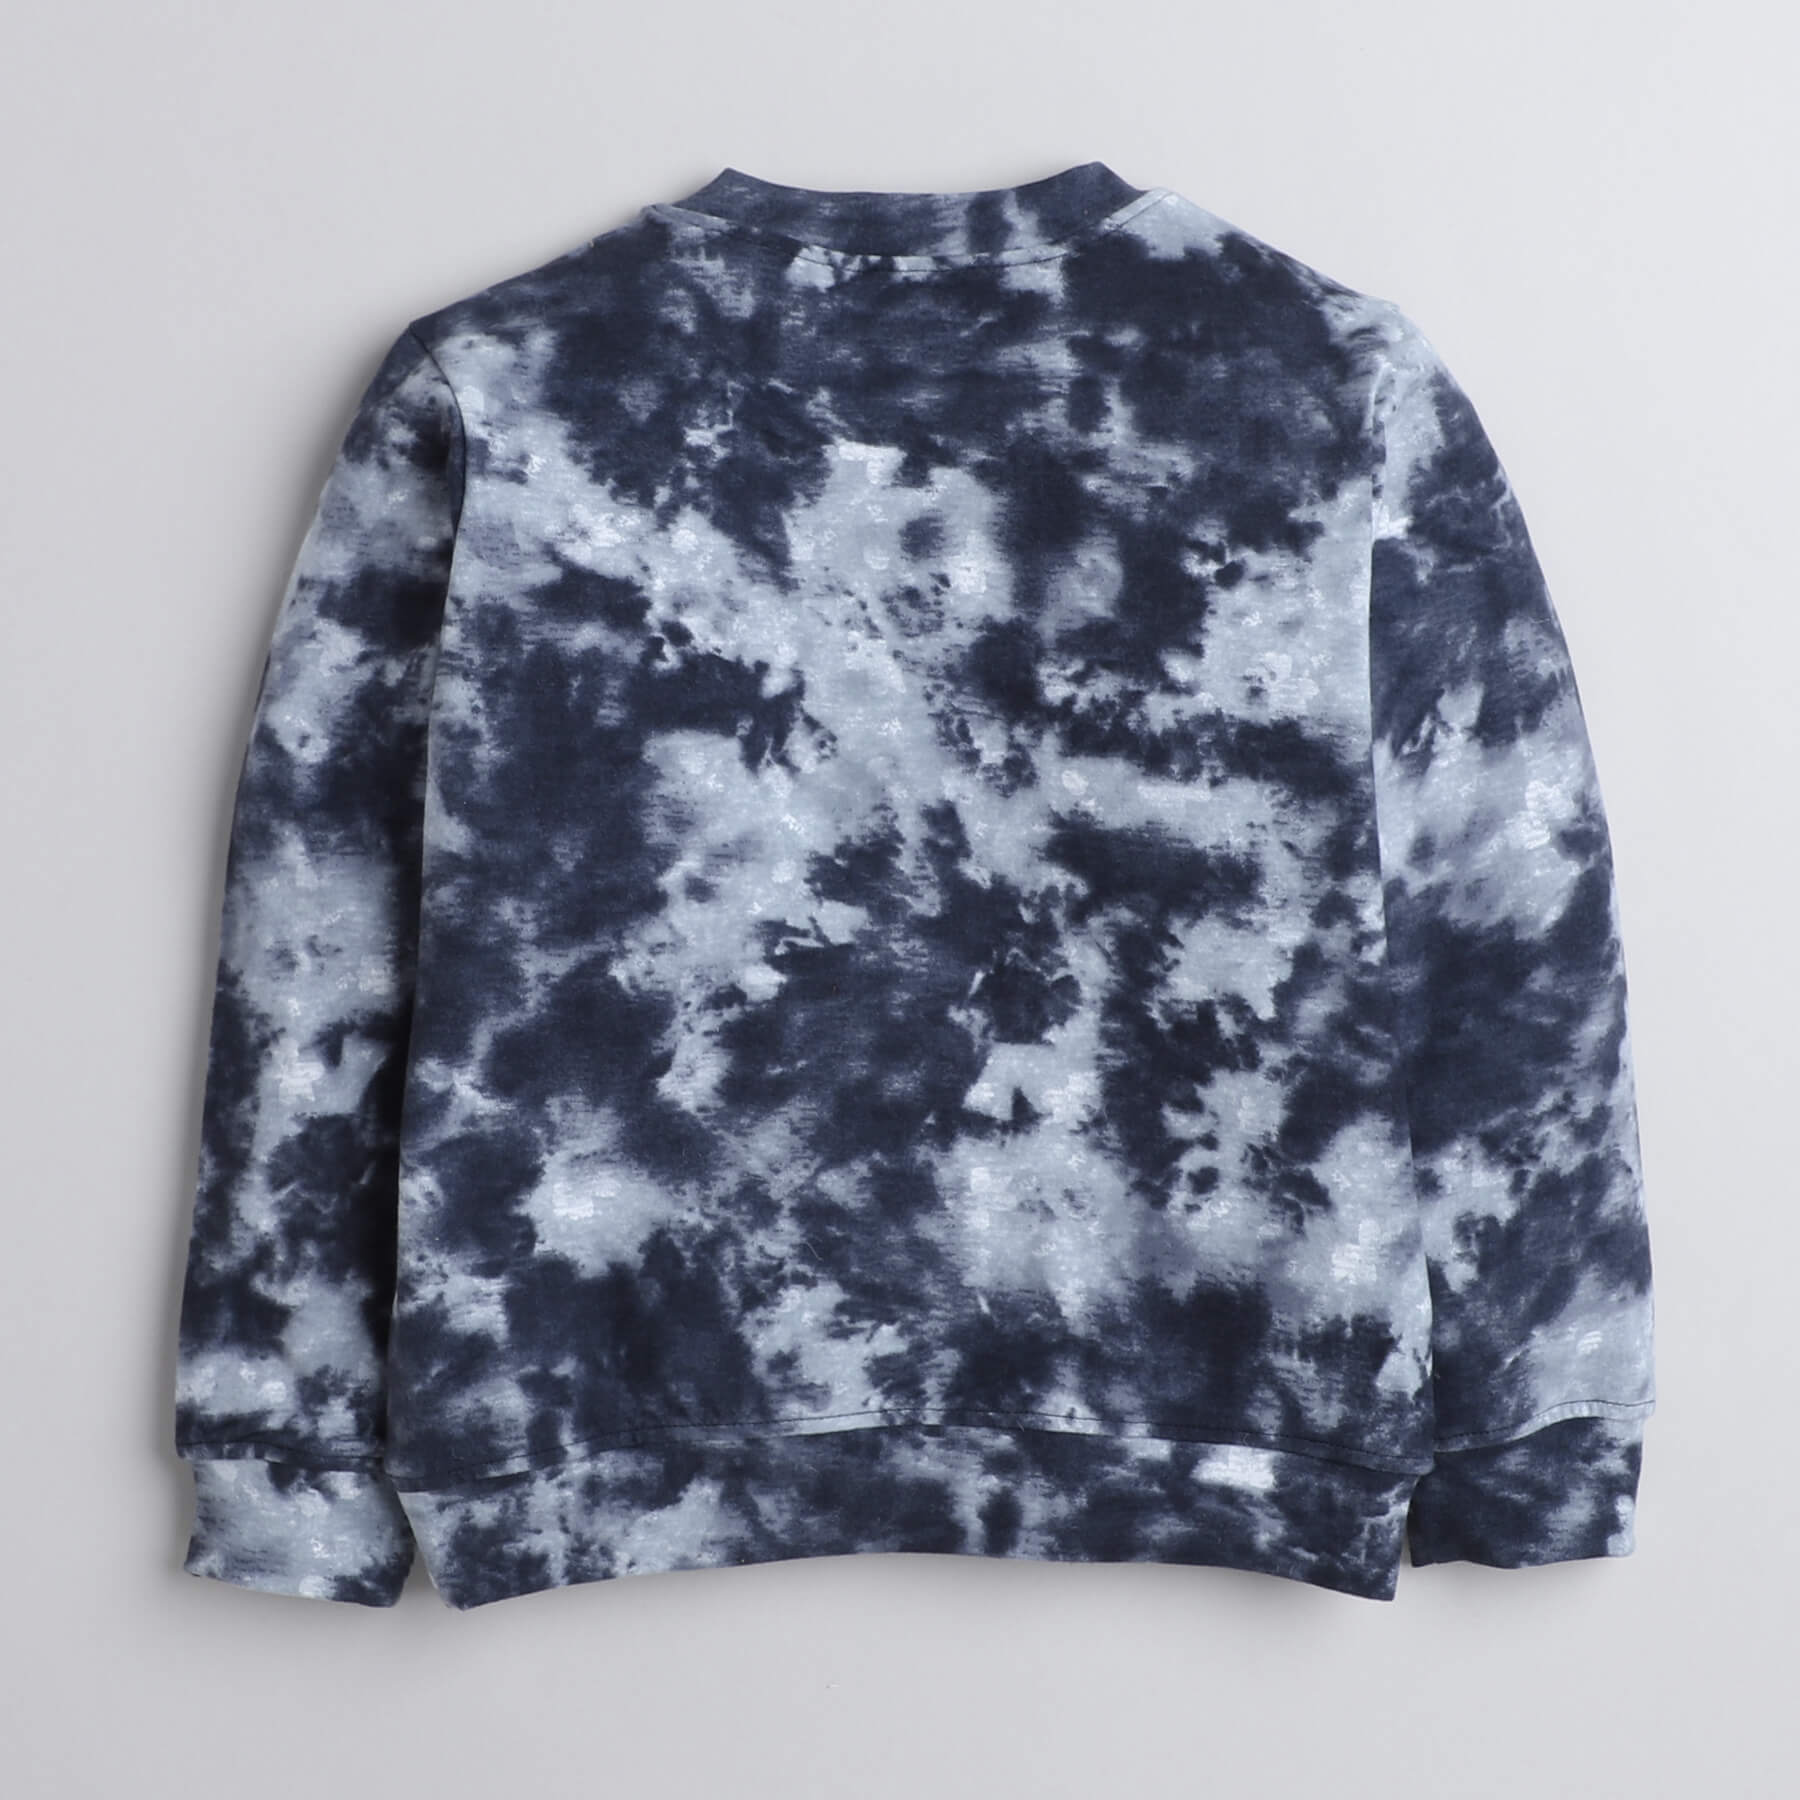 Taffykids tie-dye printed full sleeves sweatshirt and jogger pant set-Bluish grey